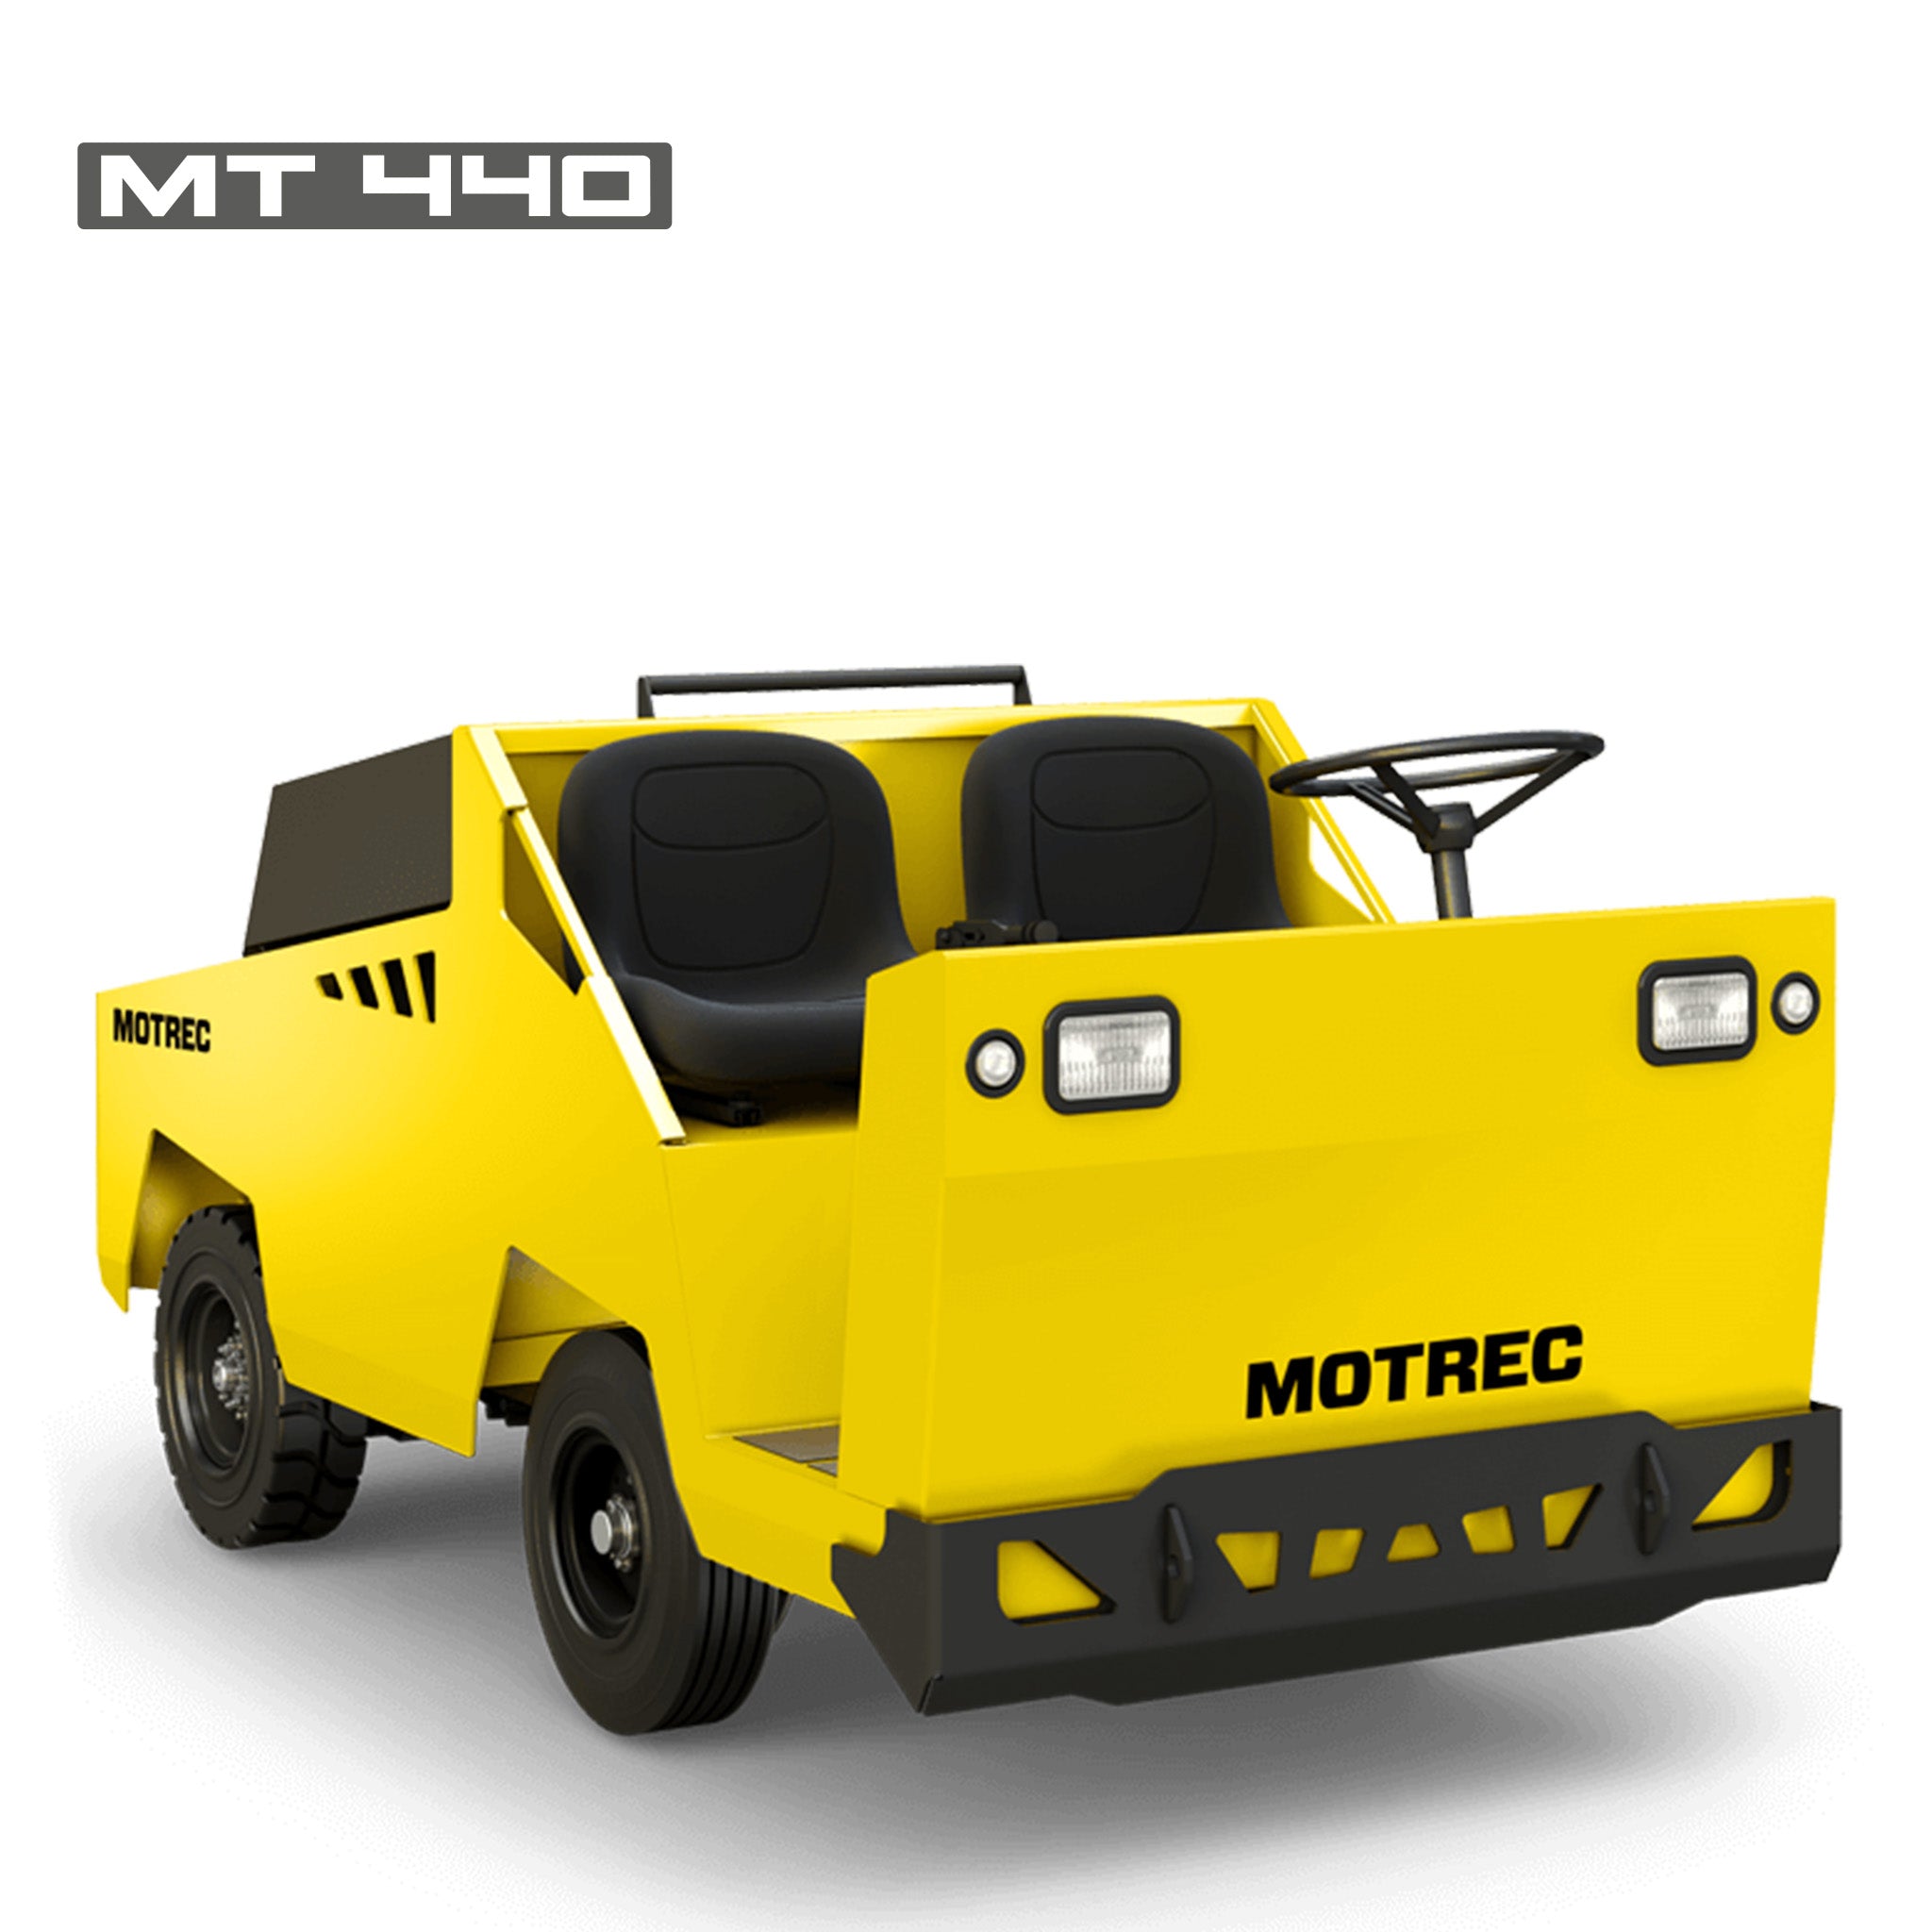 Motrec MT-440